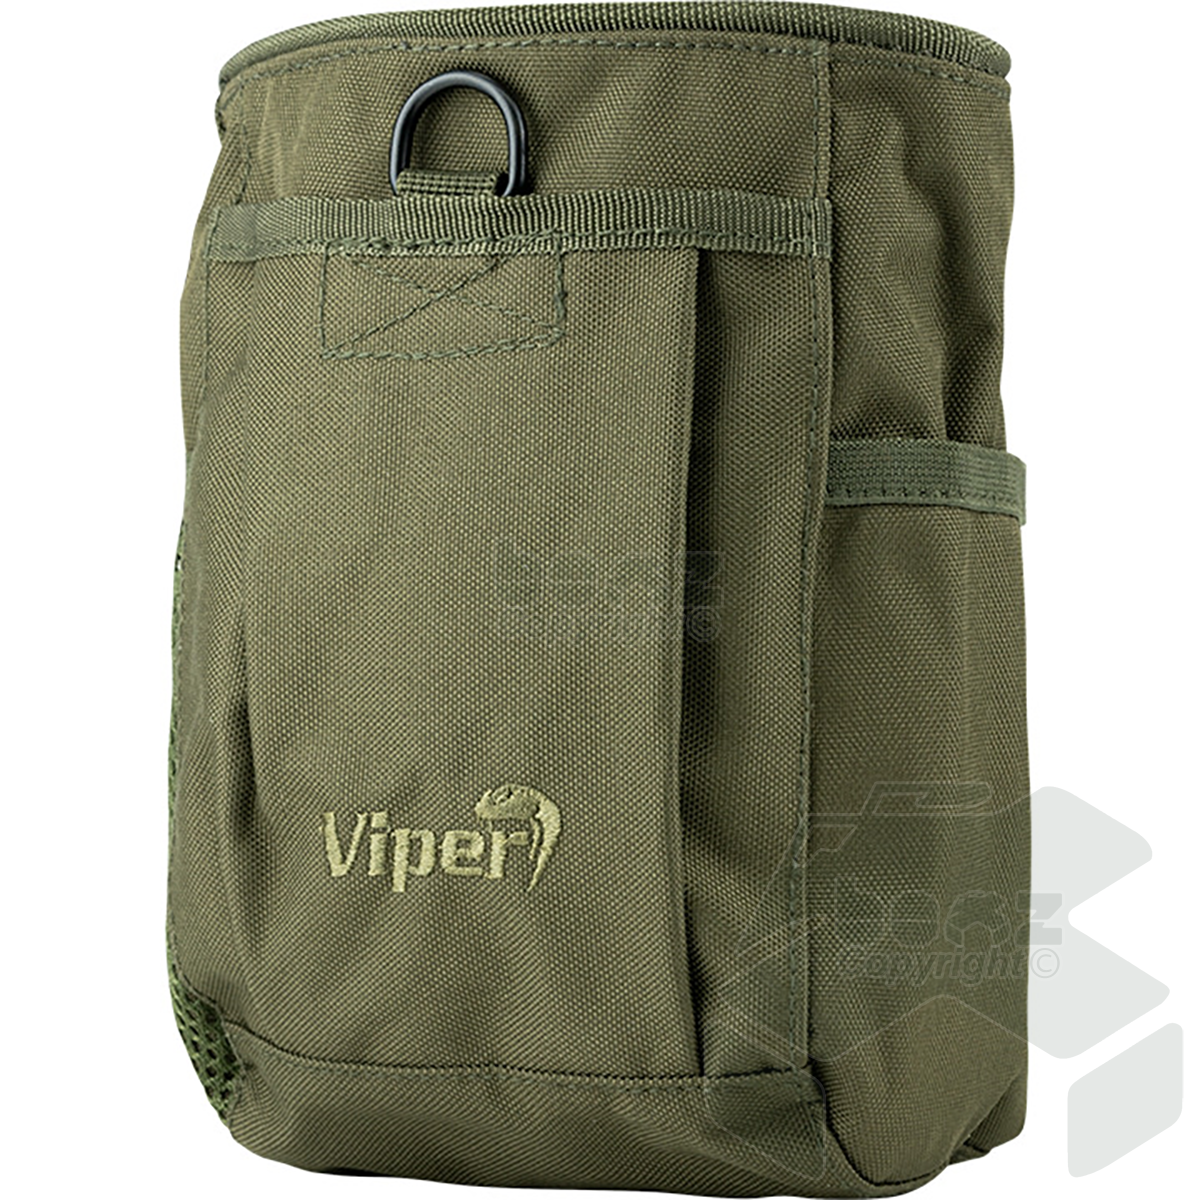 Viper Elite Dump Bag - Green